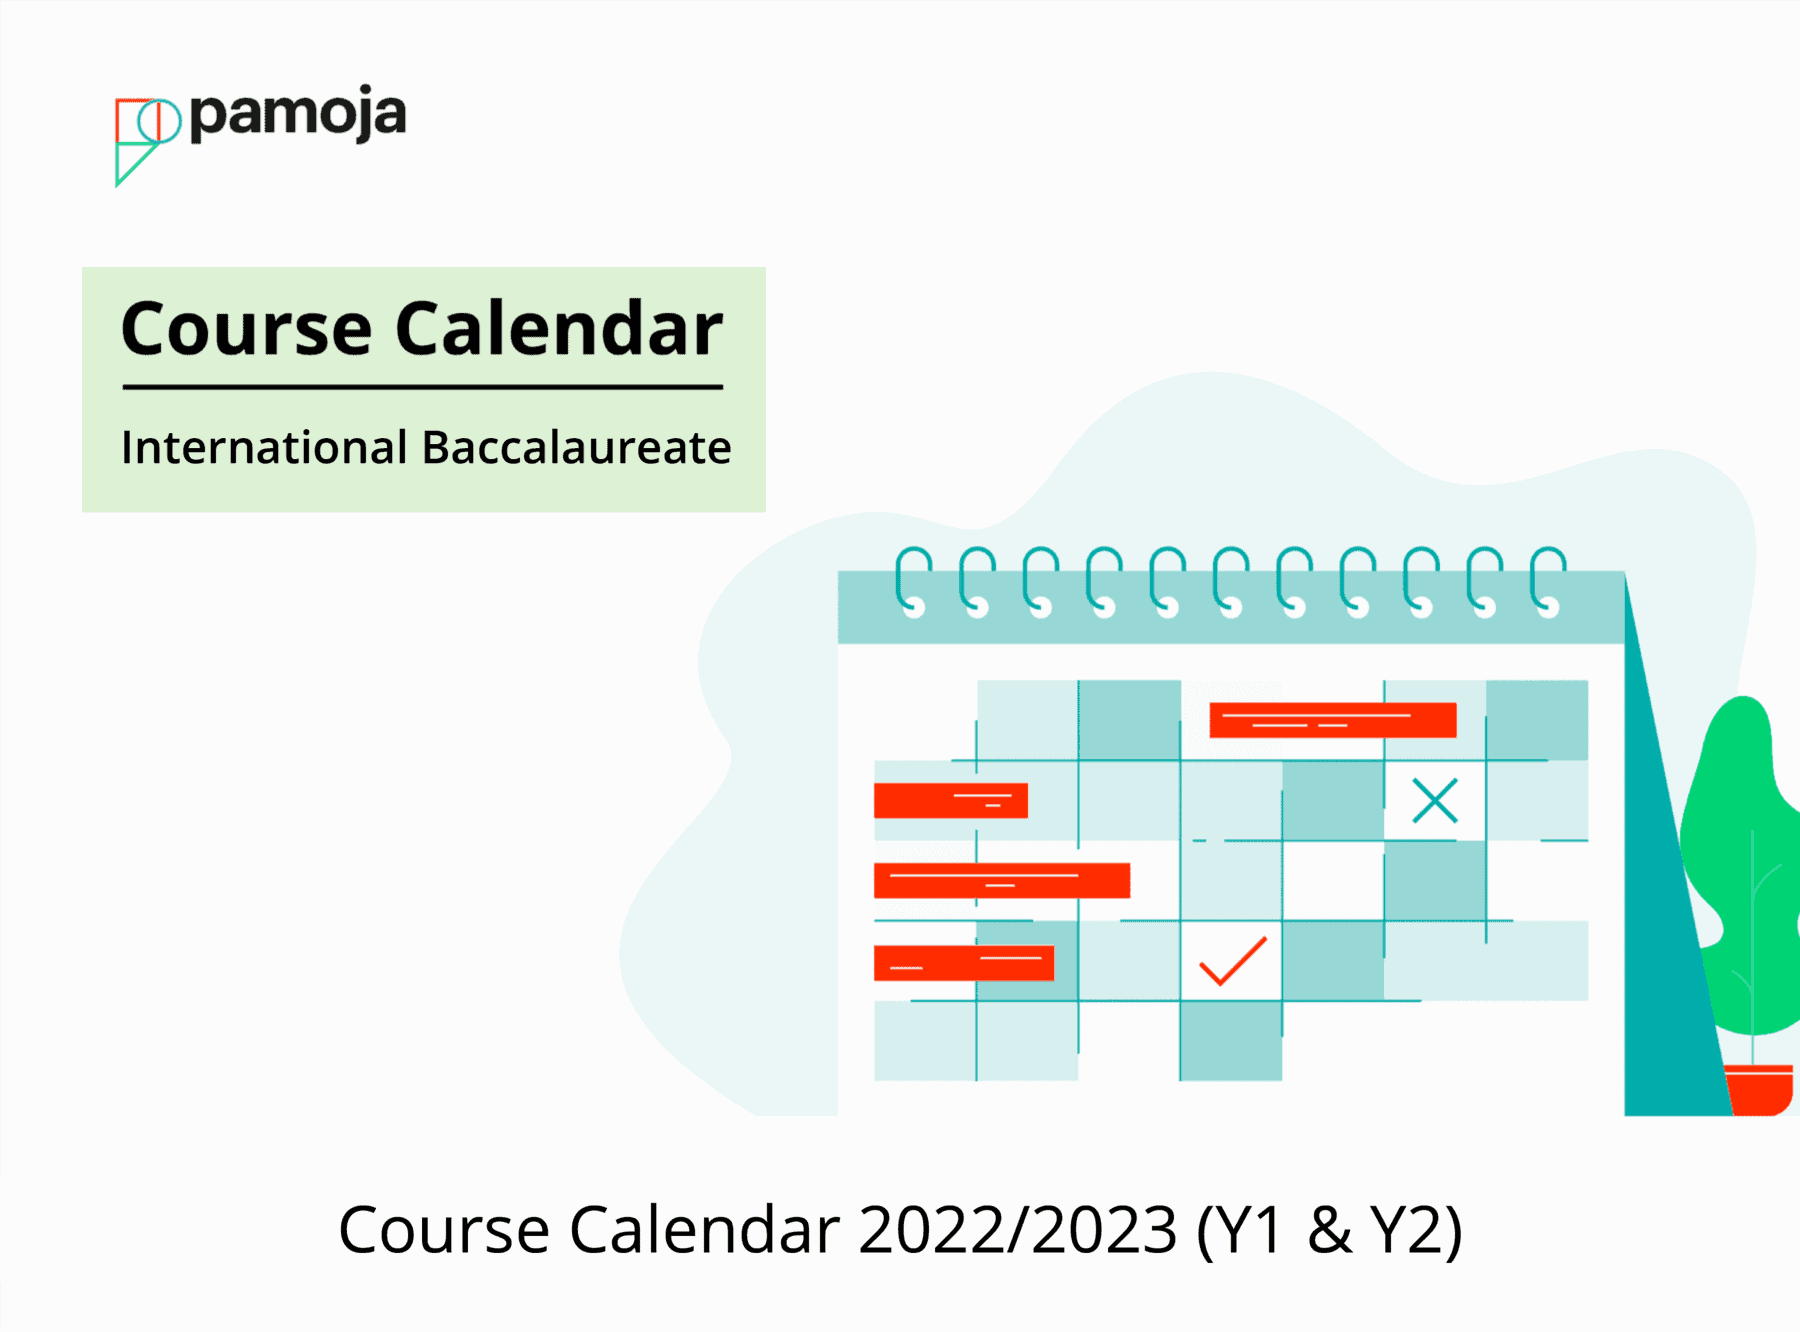 Course Calendar 2022/2023 (Nov)